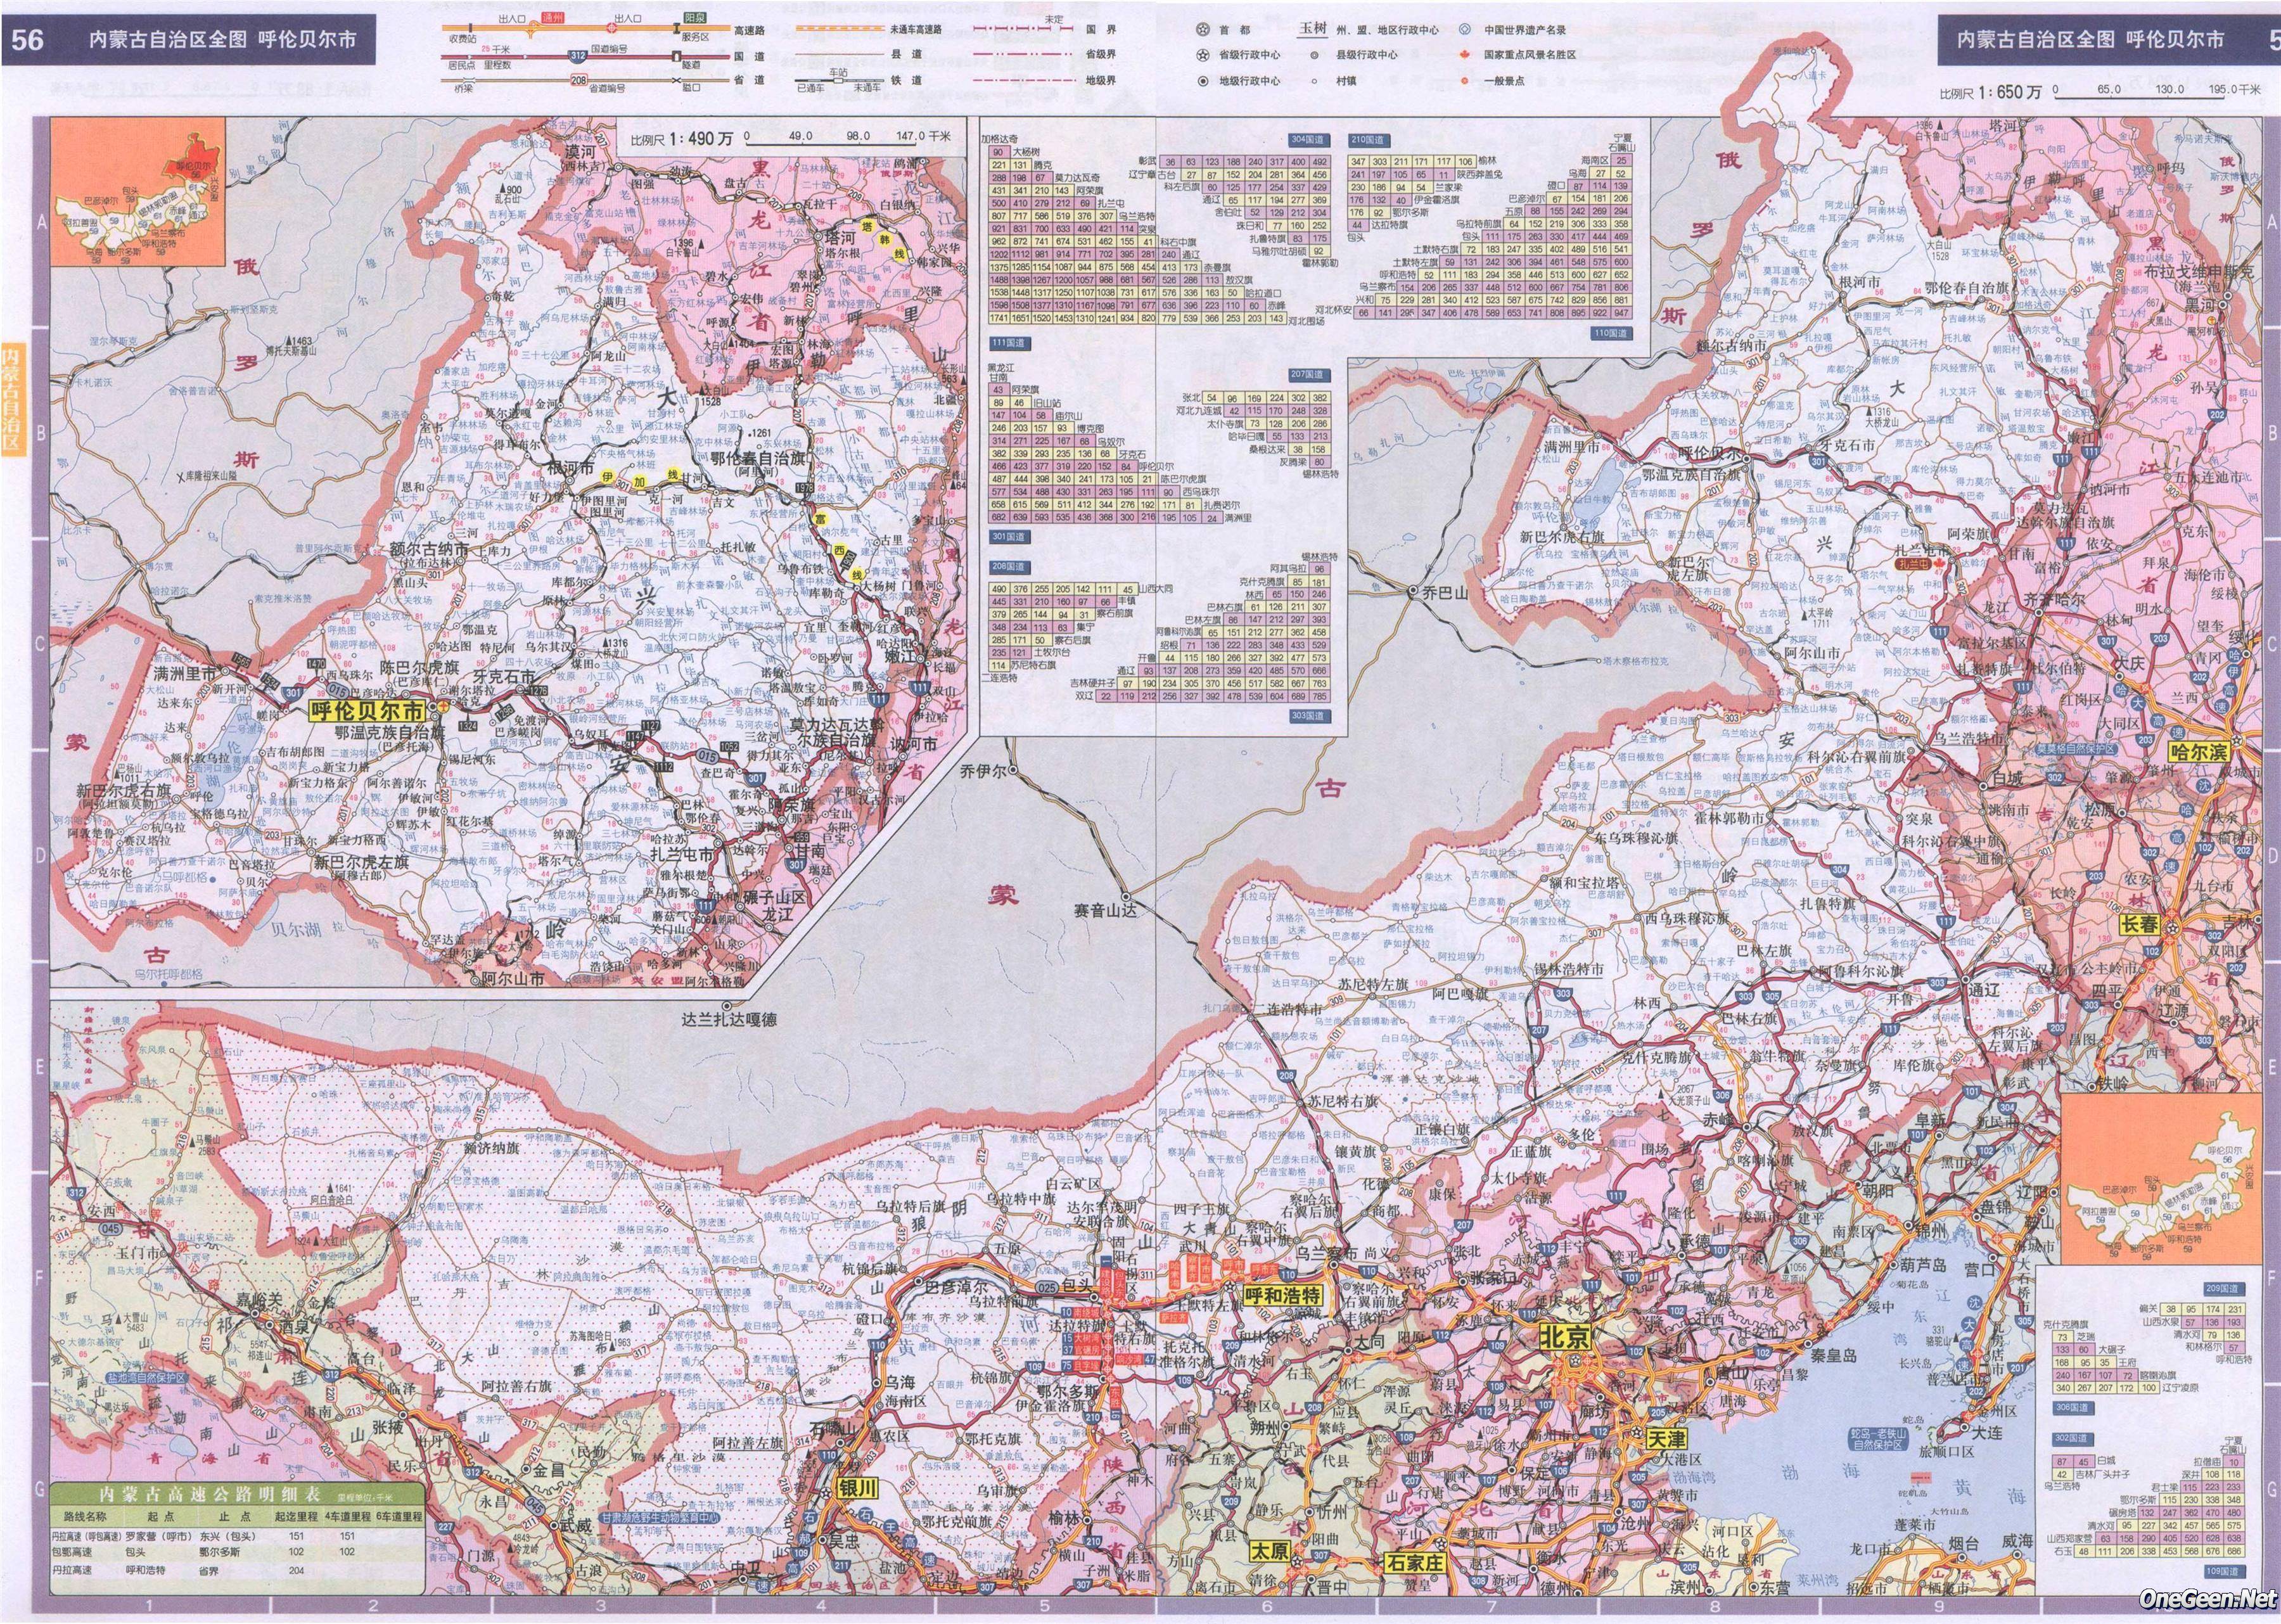 内蒙古 全图/内蒙古交通地图2014版